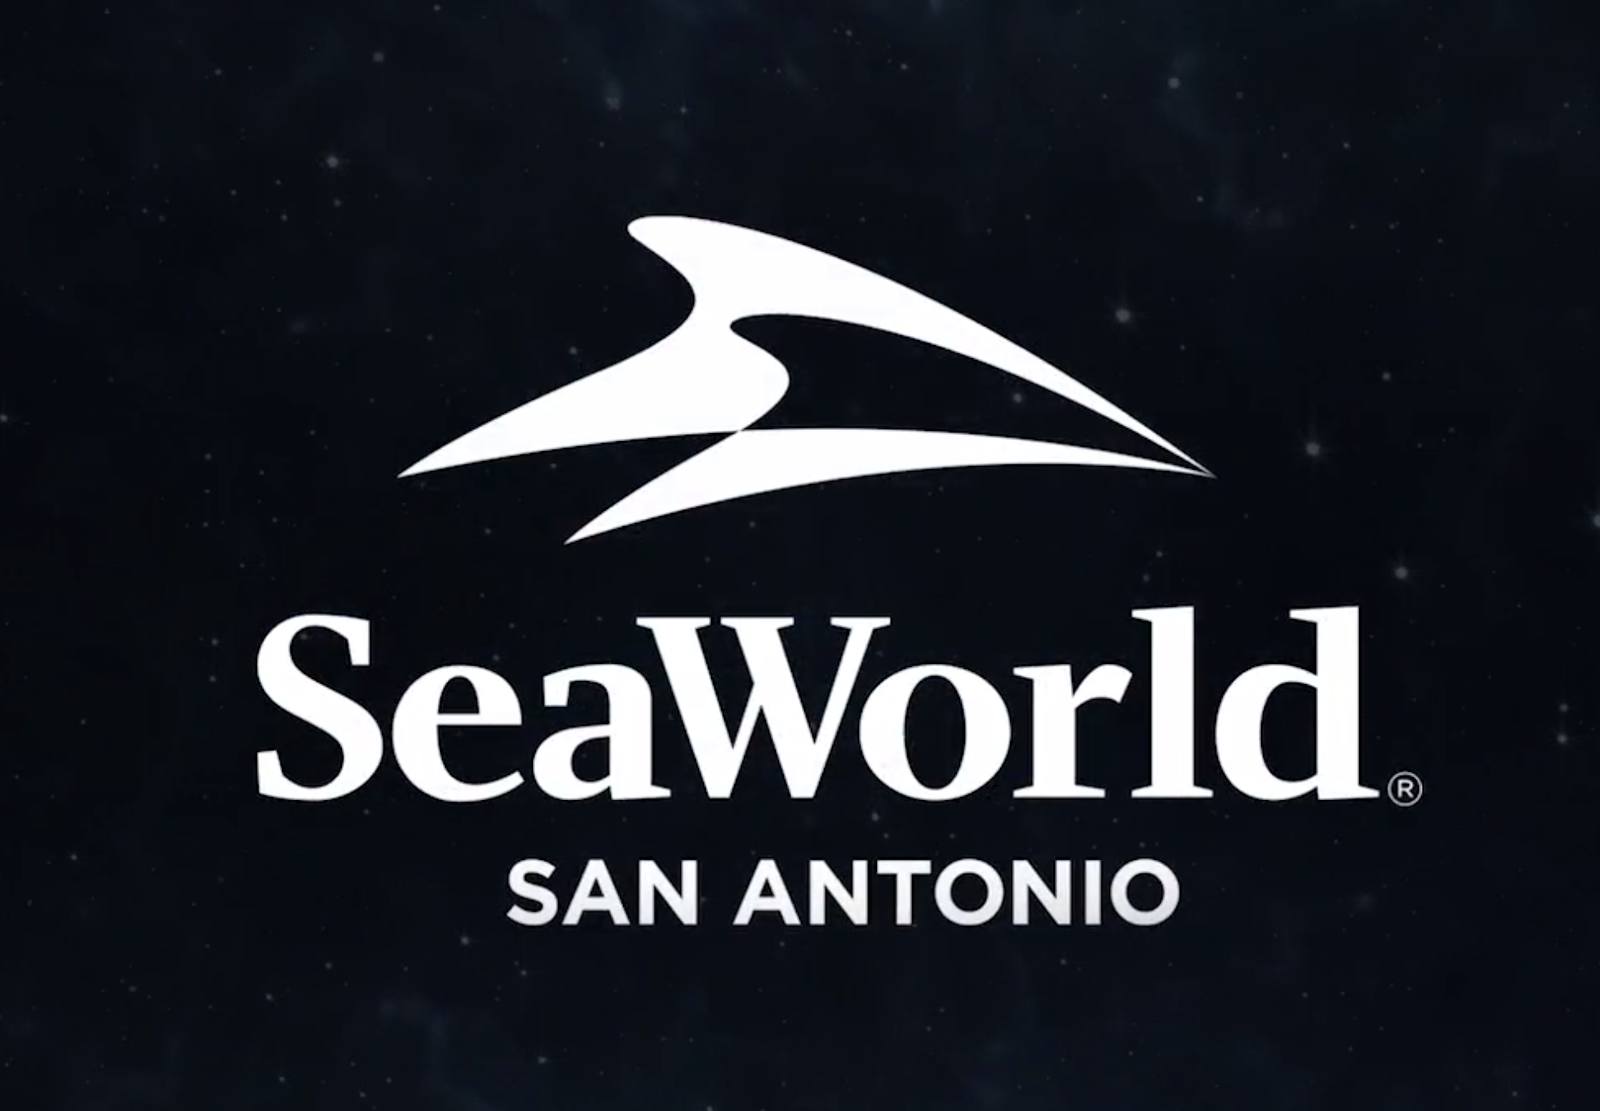 Seaworld San Antonio Logos